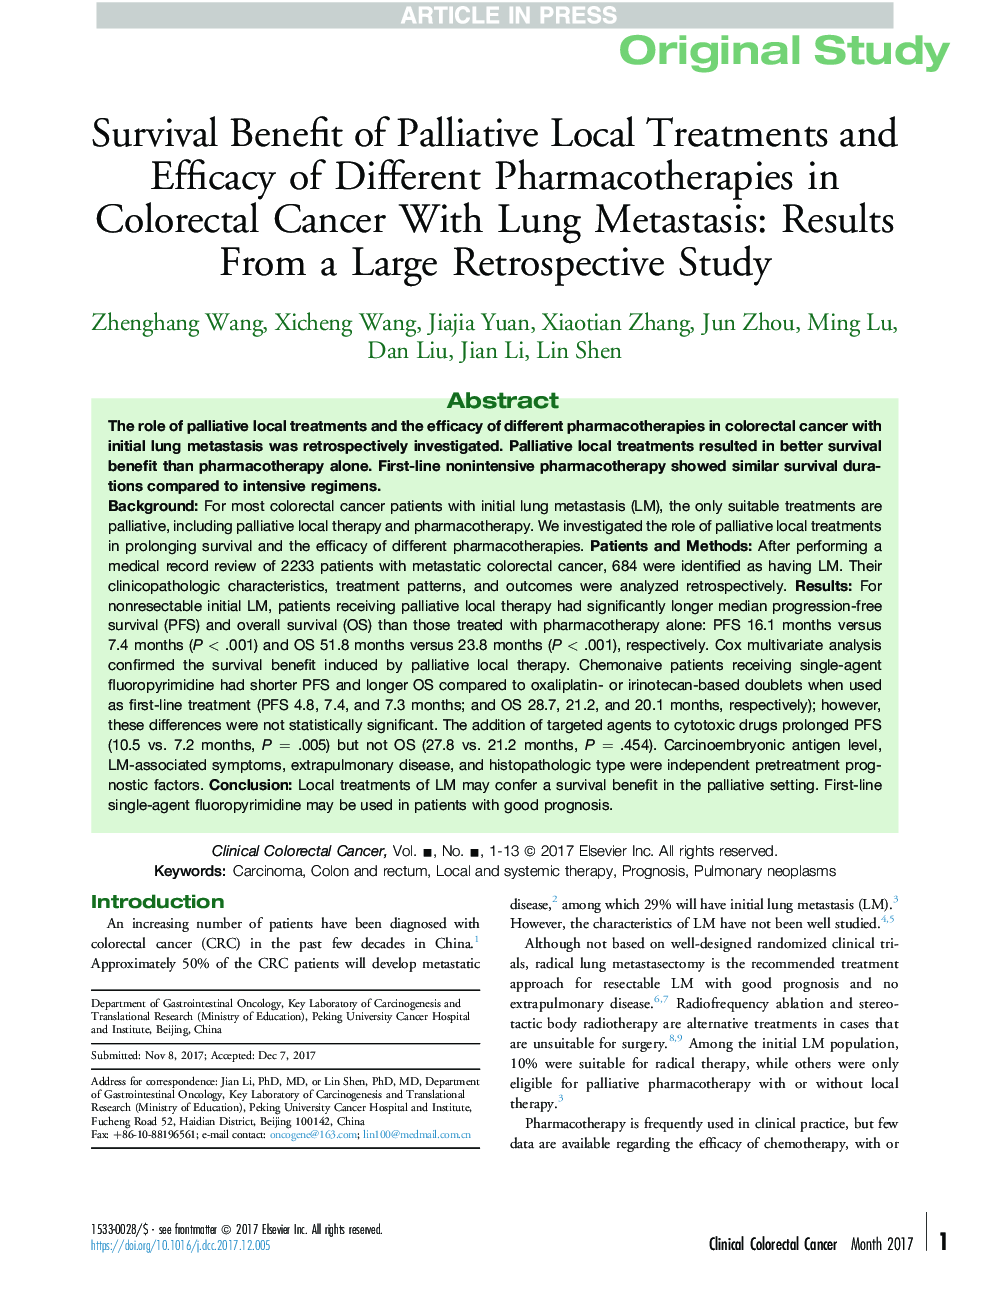 مزایای بقا درمان های موضعی و اثربخشی داروهای مختلف در سرطان کولورکتال با متاستاز ریه: نتایج از مطالعه یک مطالعه بزرگ 